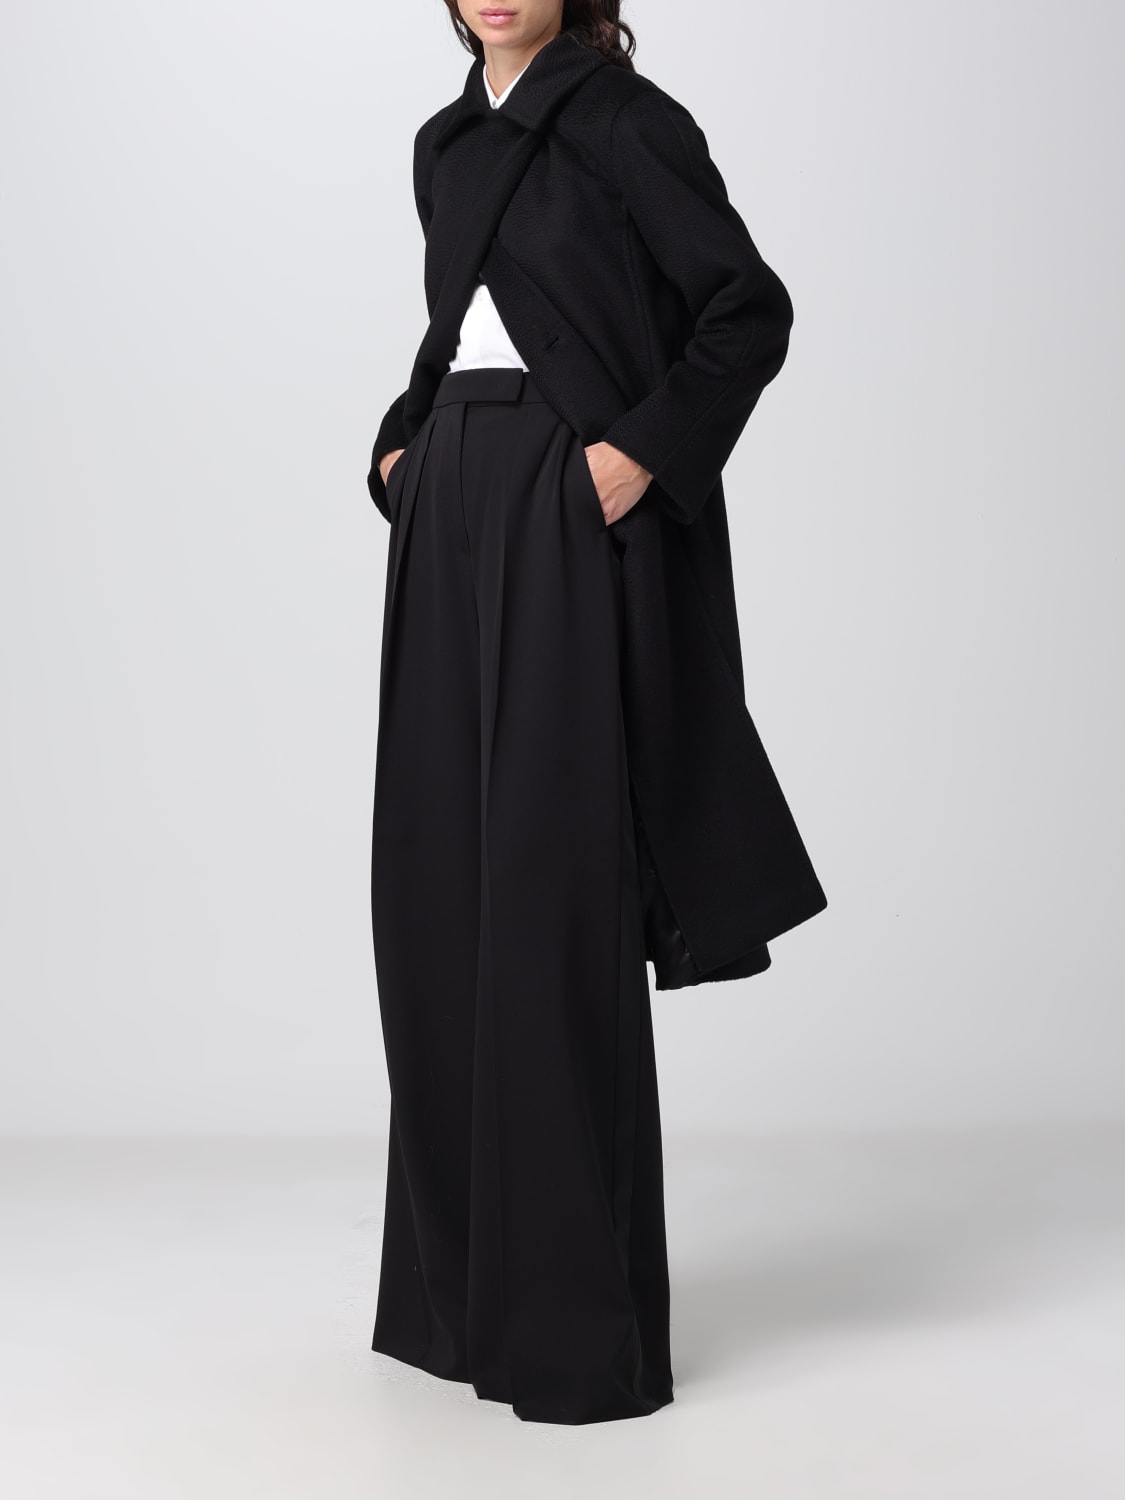 MAX MARA: Manuela coat in sable camel drap - Black | Max Mara coat ...